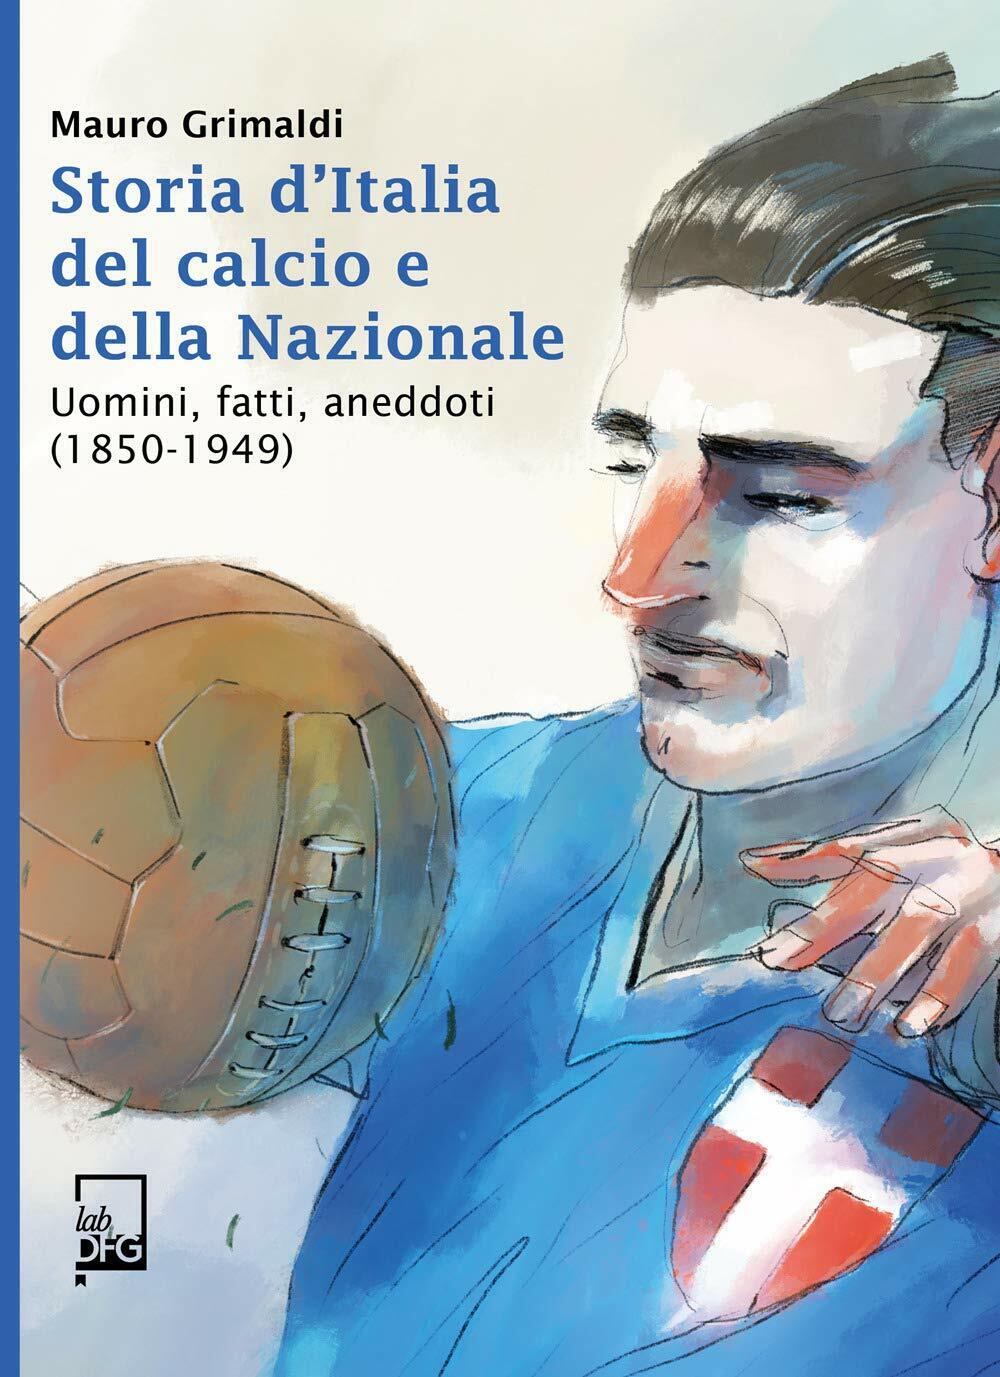 Storie d'Italia del calcio e della Nazionale - Mauro Grimaldi - DFG Lab, 2020